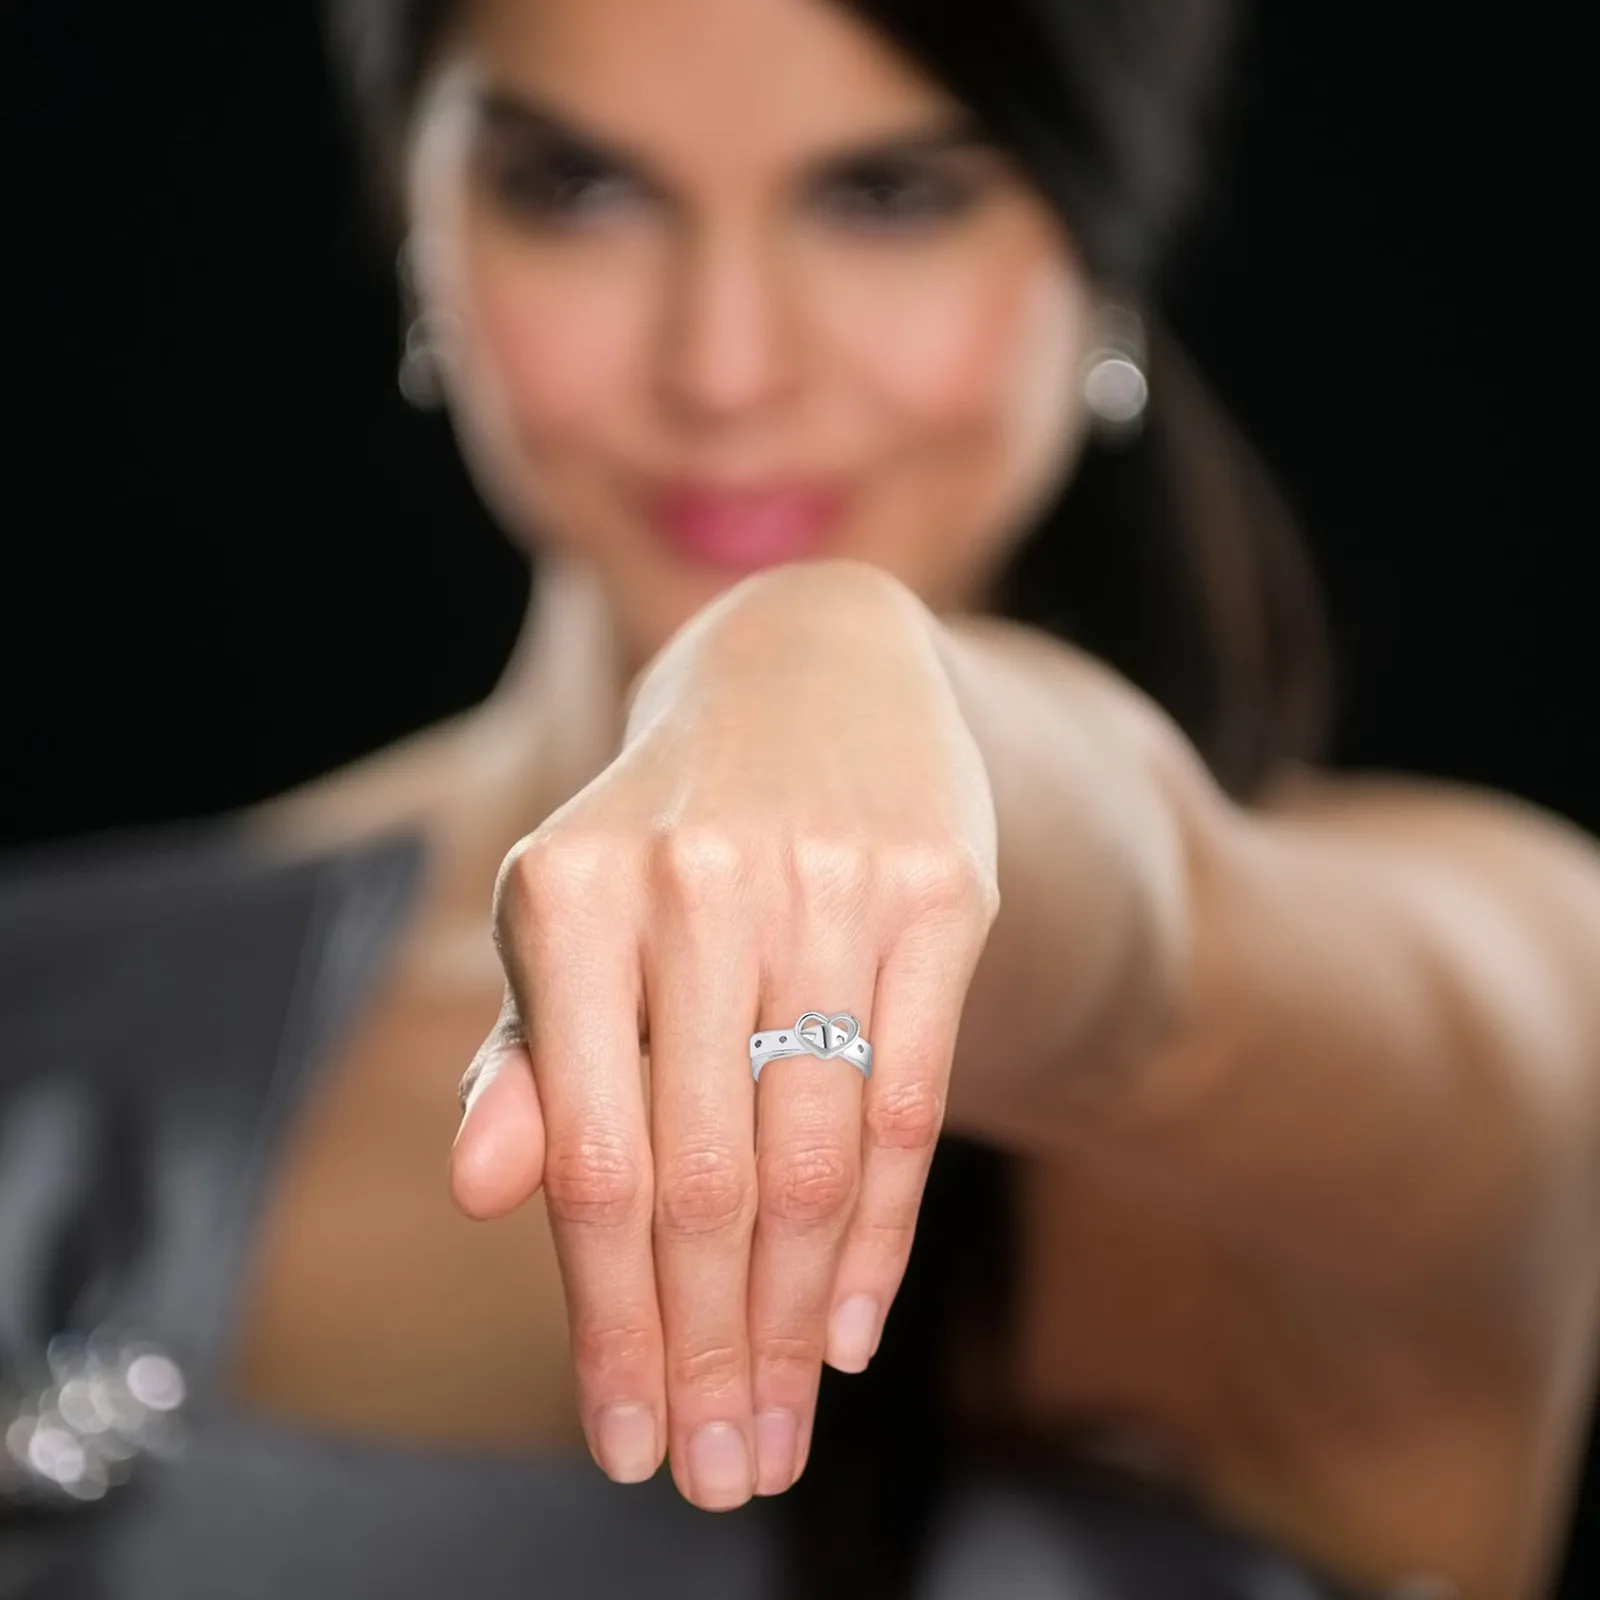 Пальцы женщин красивые. Кольцо Шахиня. Кольцо на пальце. Девушка с кольцом на пальце.